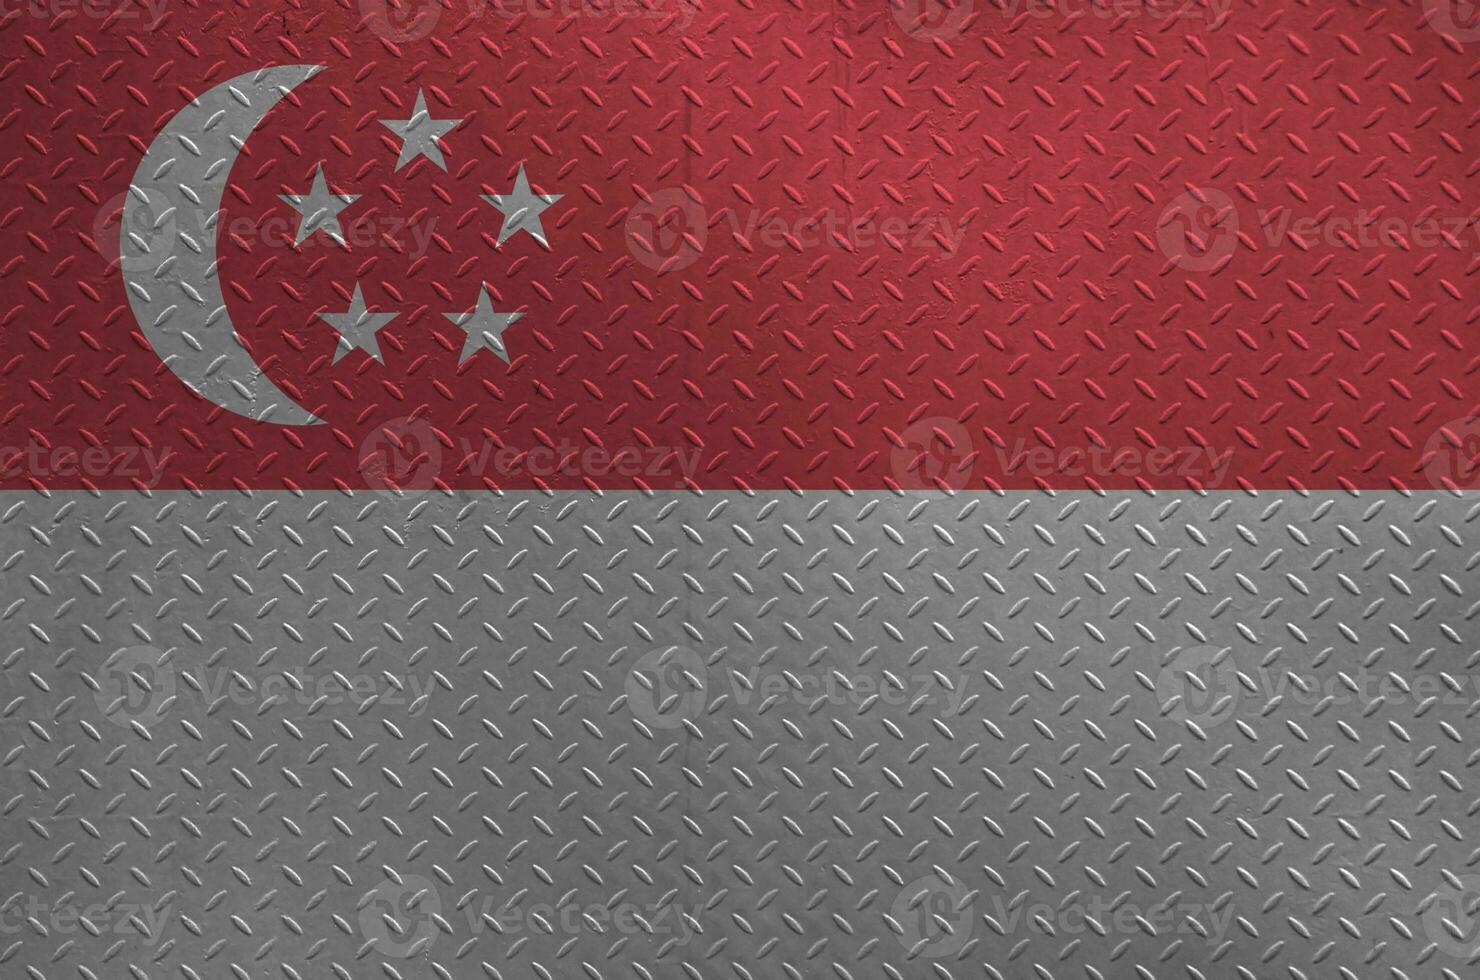 Singapur Flagge abgebildet im Farbe Farben auf alt gebürstet Metall Teller oder Mauer Nahaufnahme. texturiert Banner auf Rau Hintergrund foto